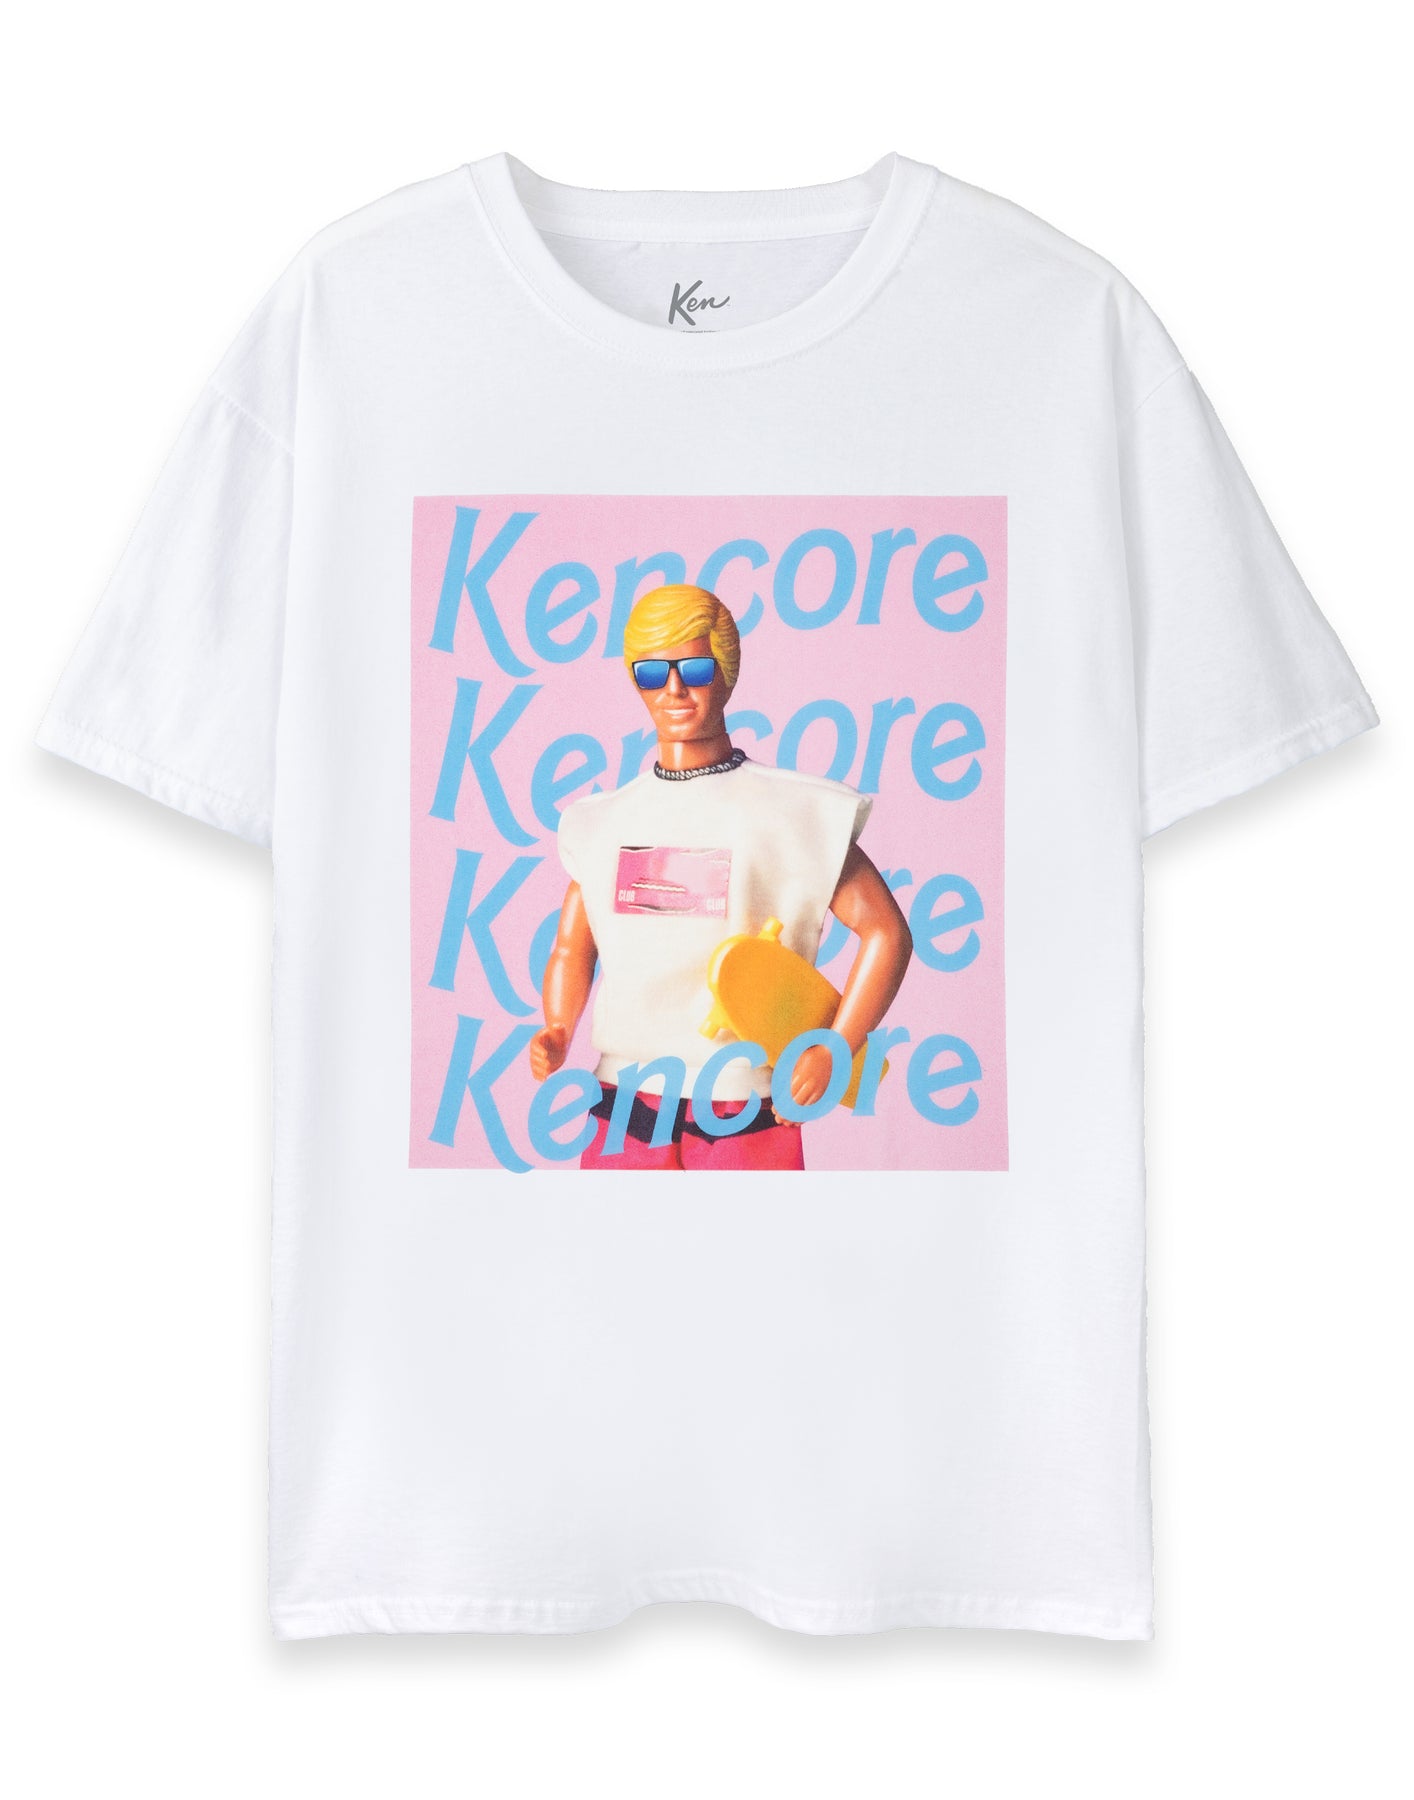 barbie kencore mens white short sleeved t shirt 8475 llurp